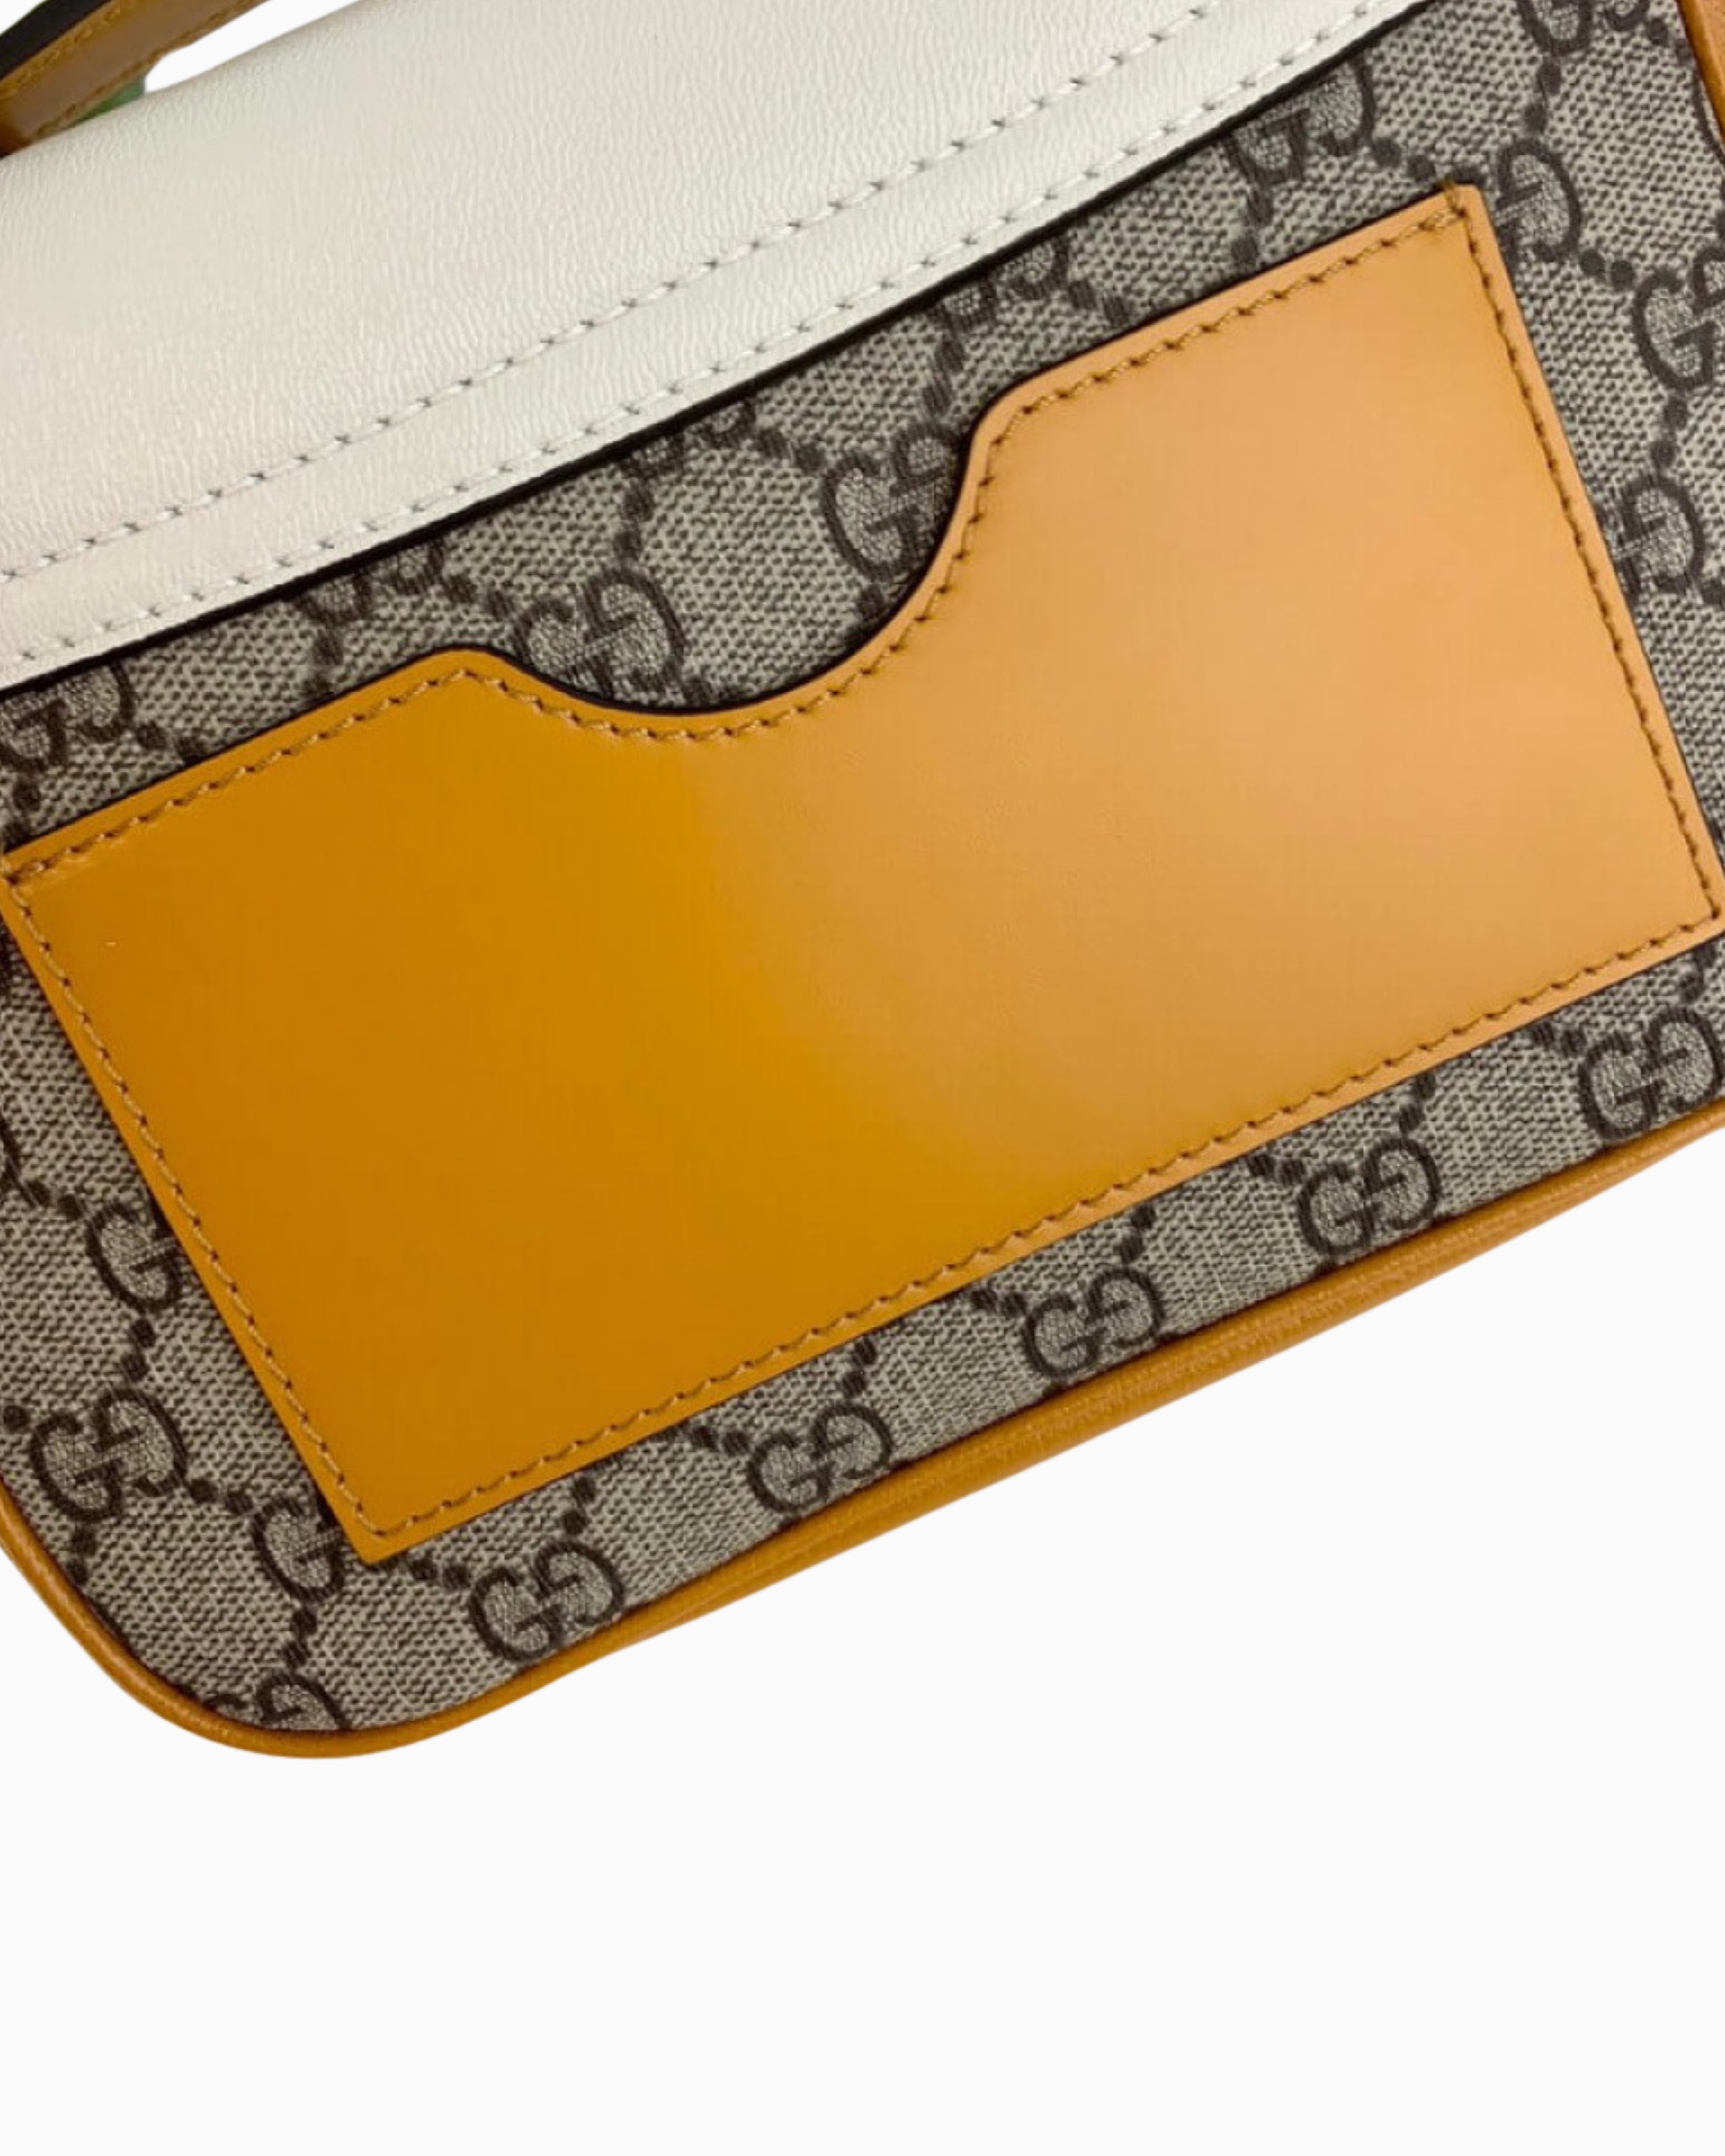 Gucci GG Supreme Canvas Leather Padlock Shoulder Bag – FUTURO